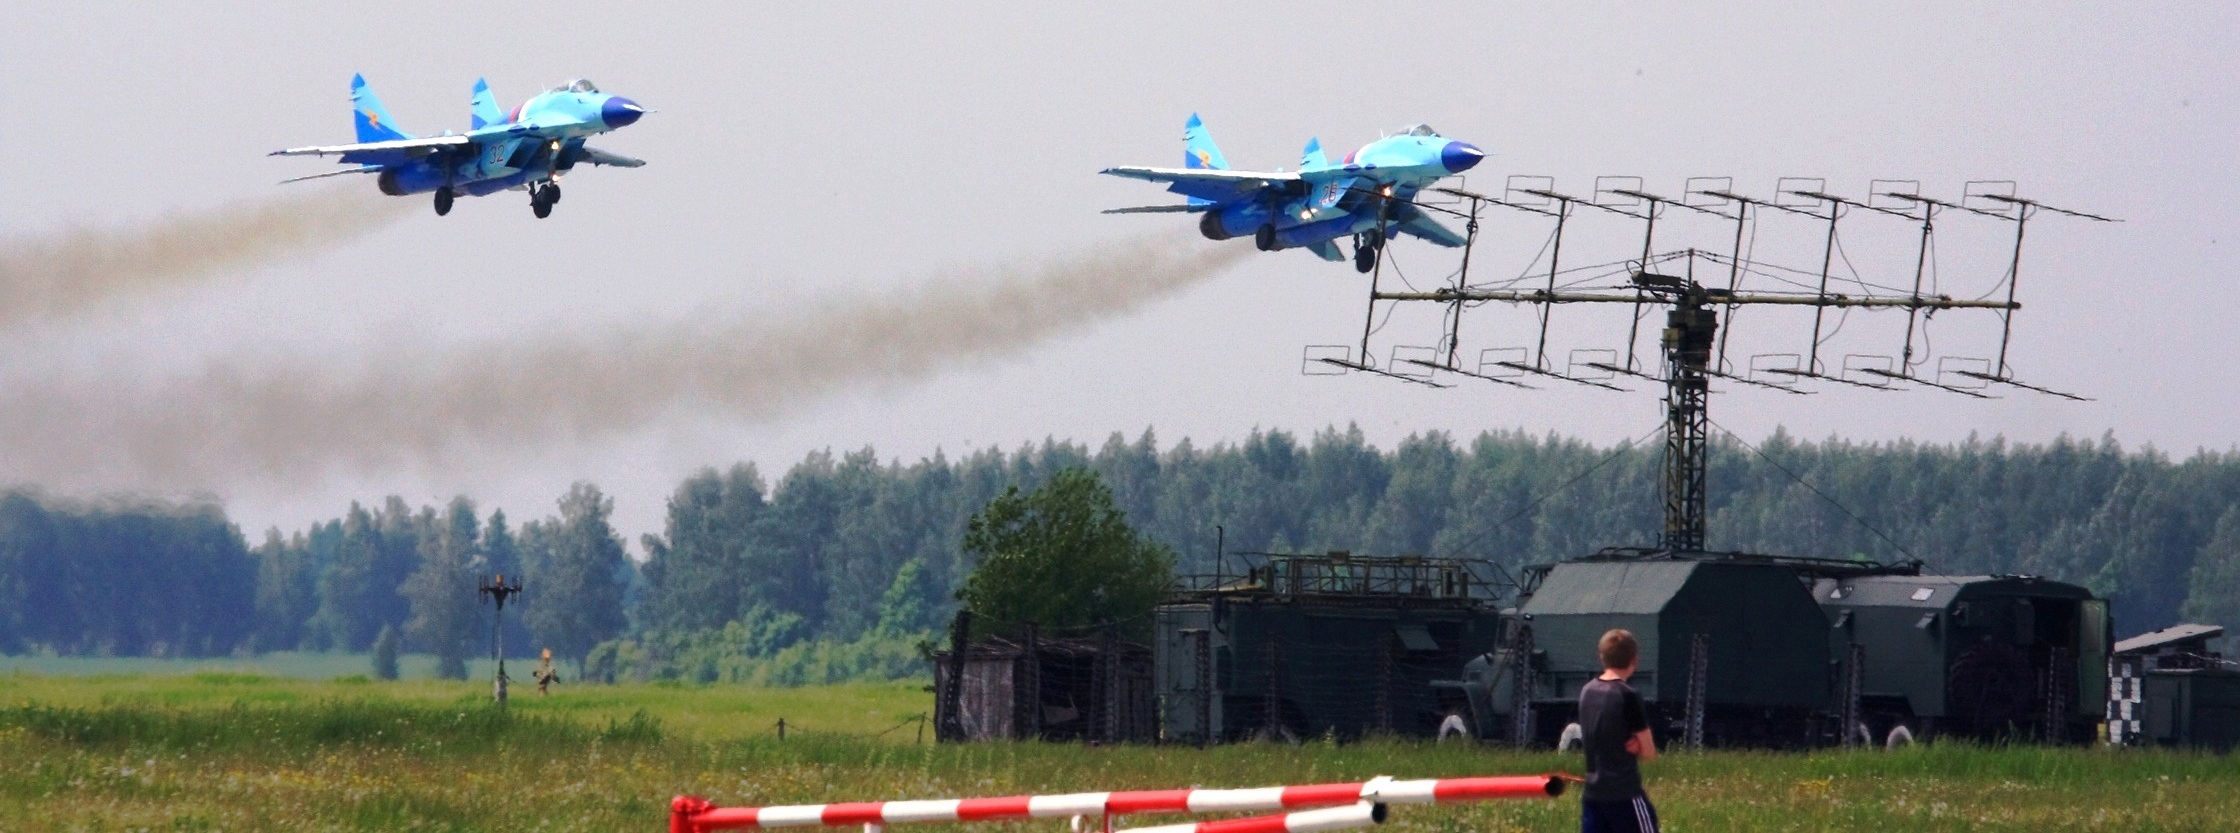 Τεράστια συγκέντρωση δυνάμεων πριν τη μάχη της Σύρτης: Ρωσικά MiG-29 στην αλ-Τζούφρα – «Η θα νικήσουμε ή θα πεθάνουμε»